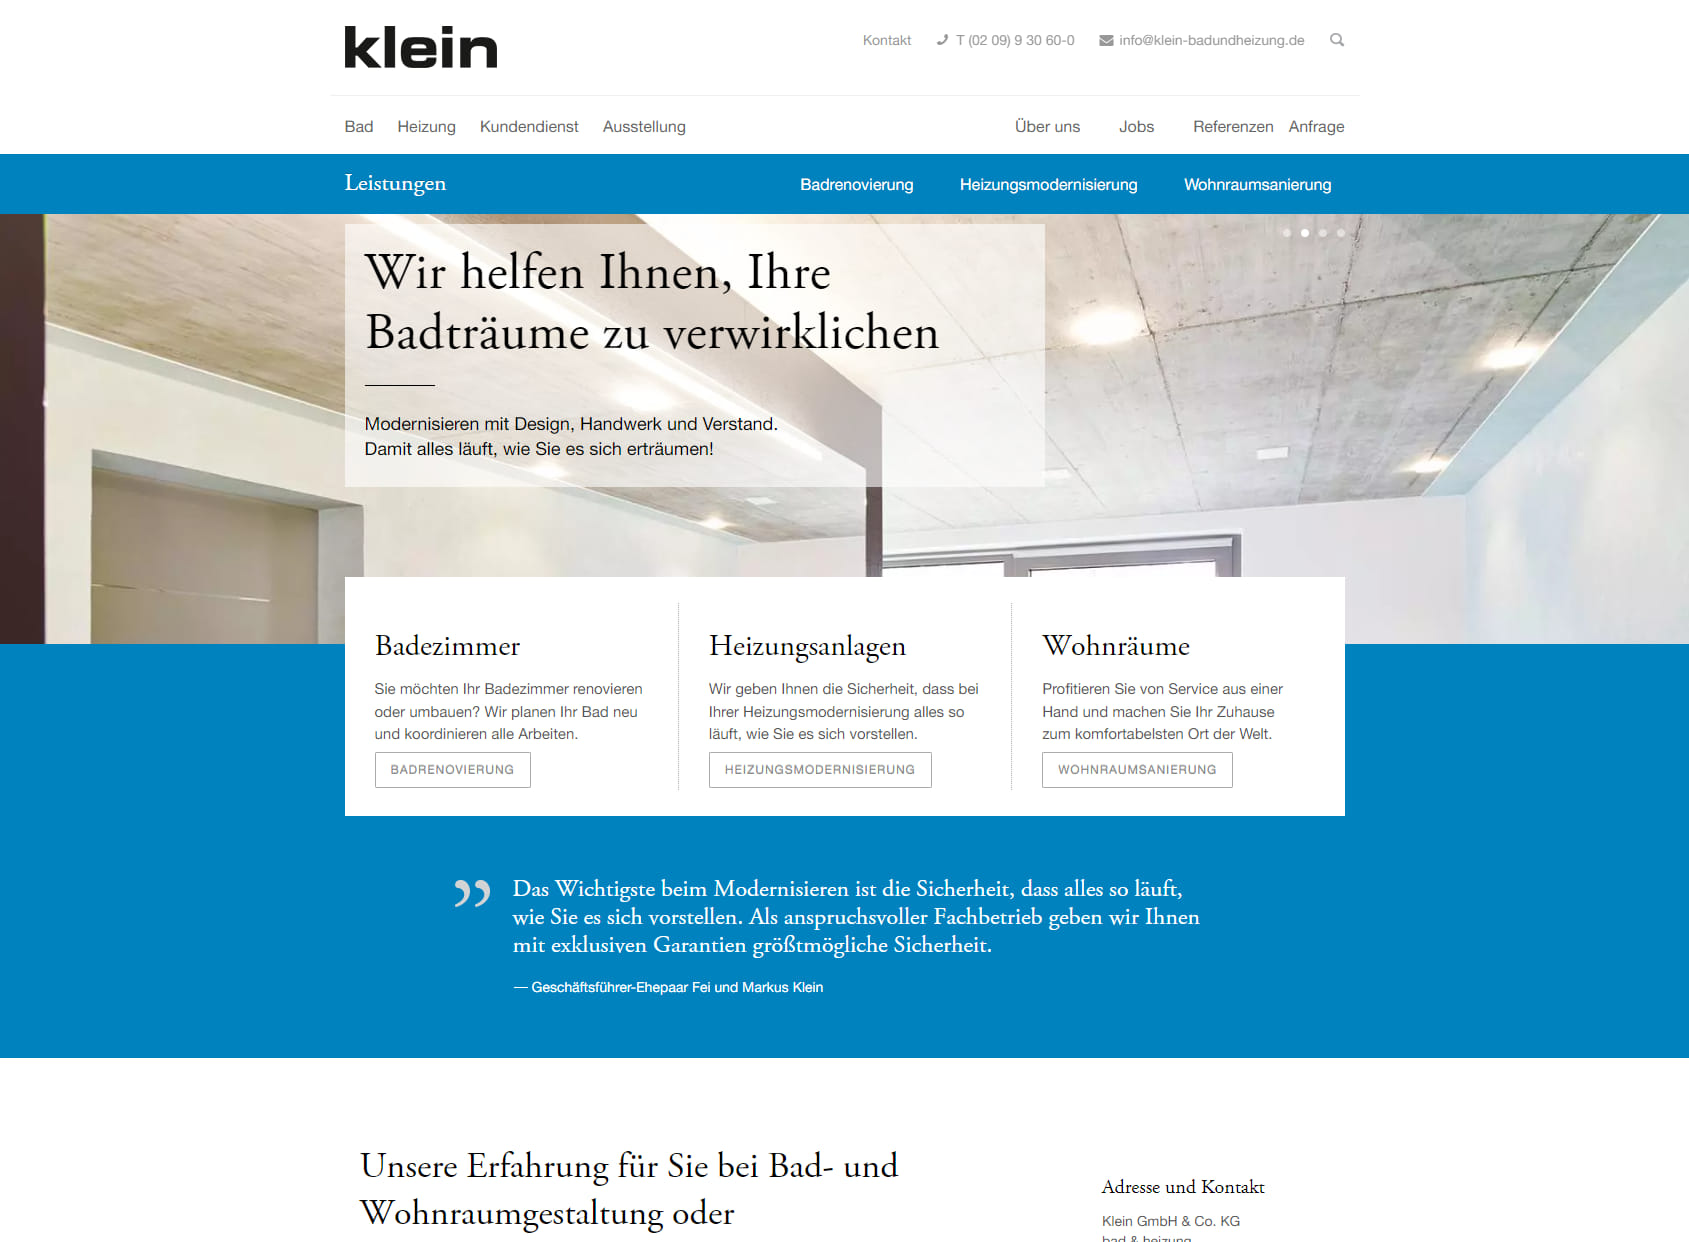 Klein GmbH & Co. KG bad & heizung